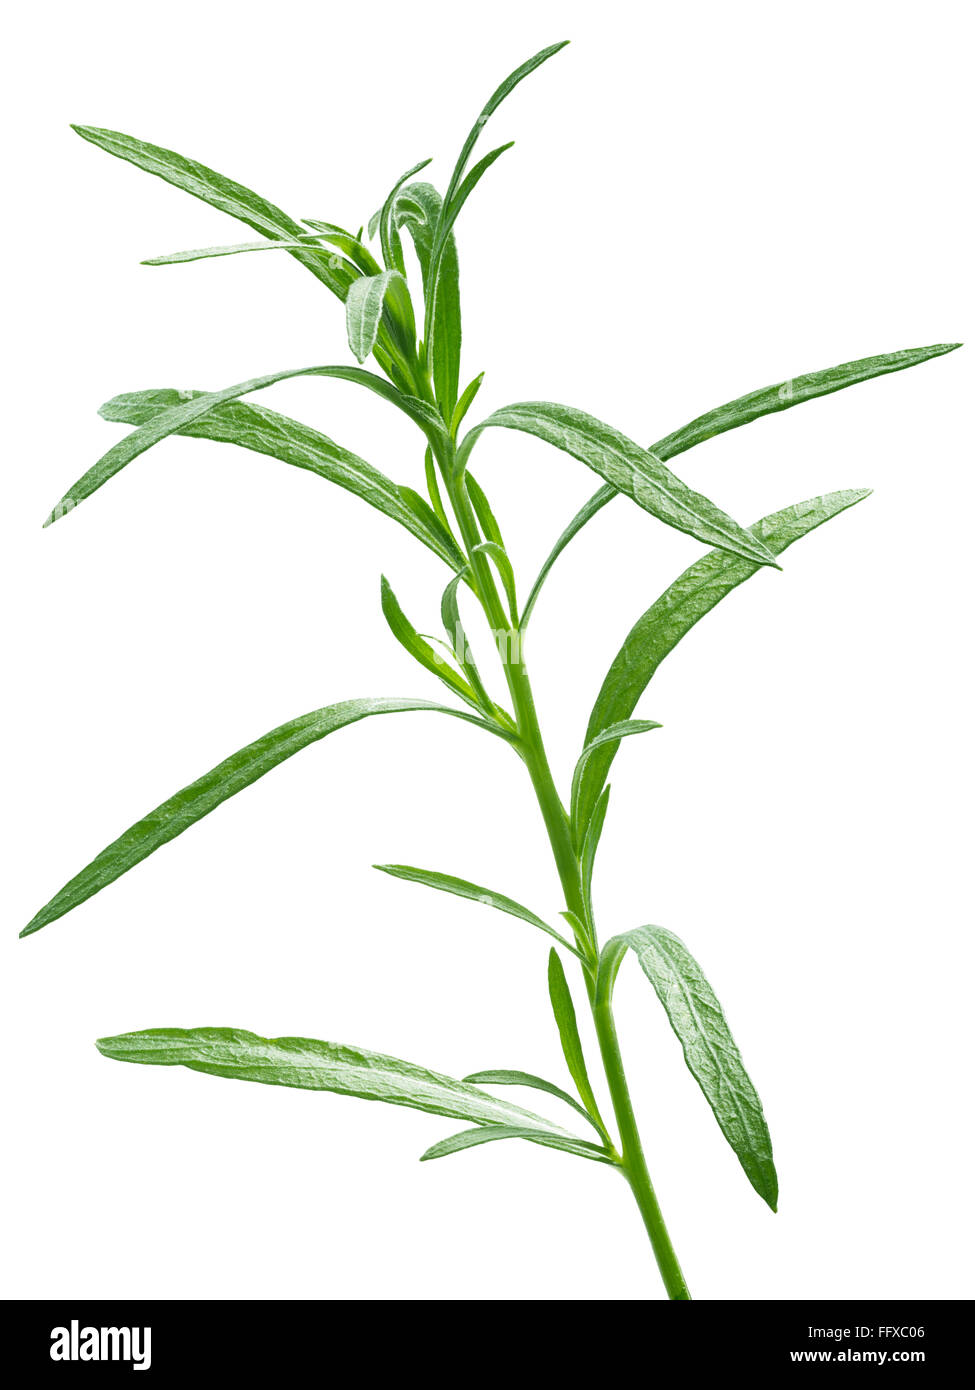 Frischen Estragon (Artemisia Dracunculus). Aromatisches Kraut fein. Clipping-Pfad, unendliche DOF, hoch detaillierte, verbesserte Farbe Stockfoto